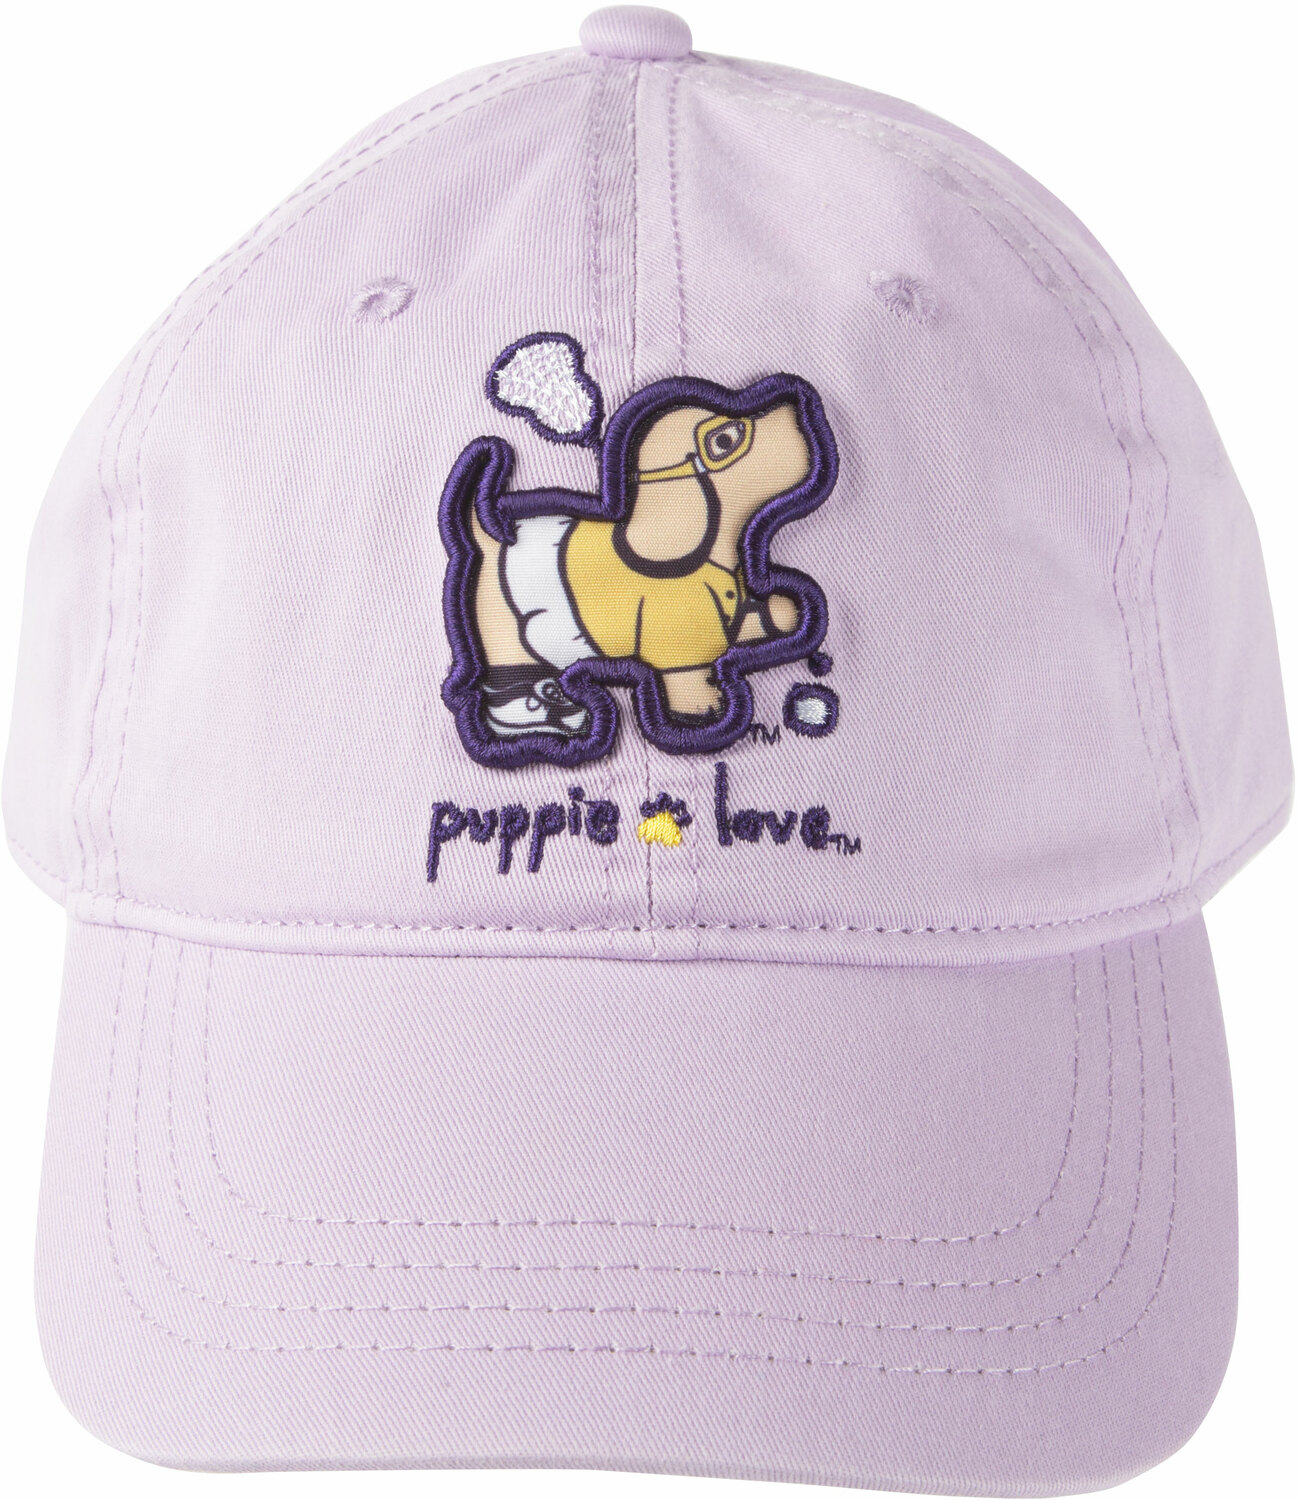 Lacrosse by Puppie Love - Lacrosse - Light Purple Adjustable Hat